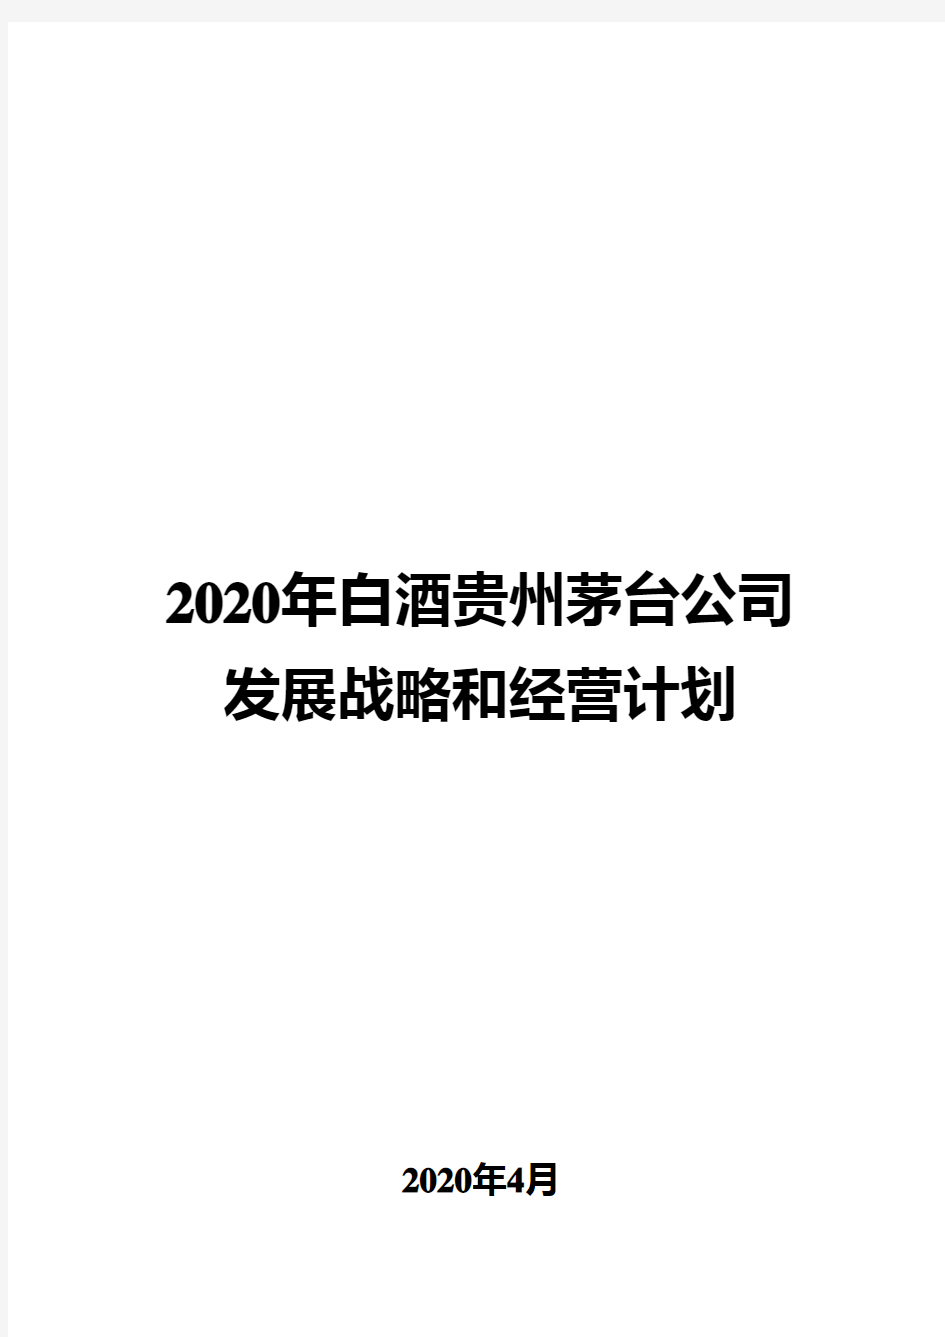 2020年白酒贵州茅台公司发展战略和经营计划